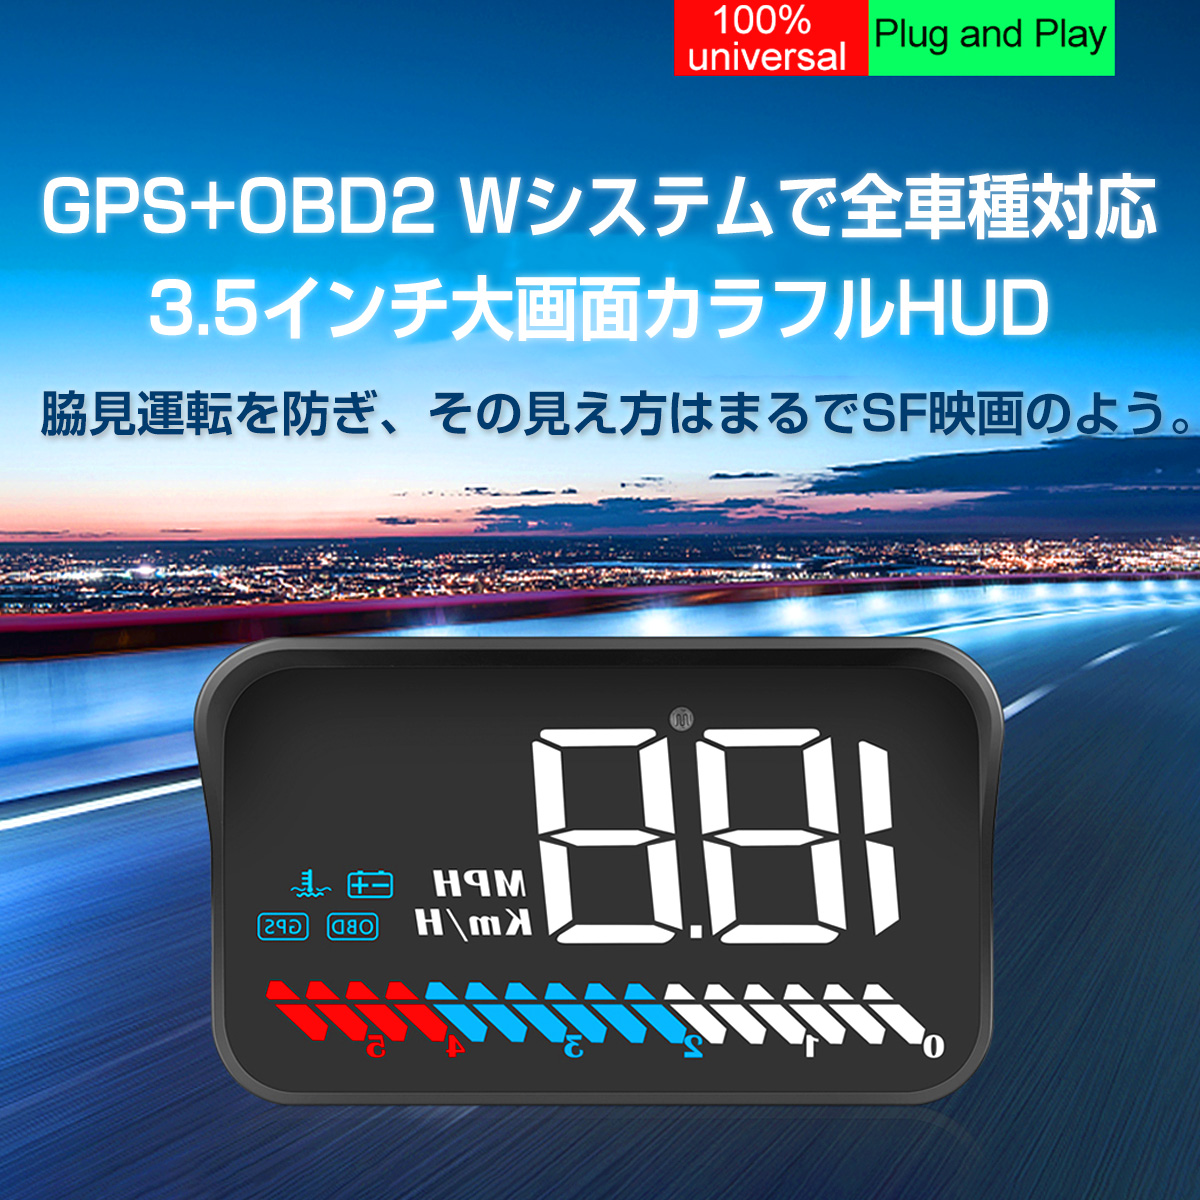 ヤマダモール | ヘッドアップディスプレイ HUD M7 OBD2/GPS 速度計 車